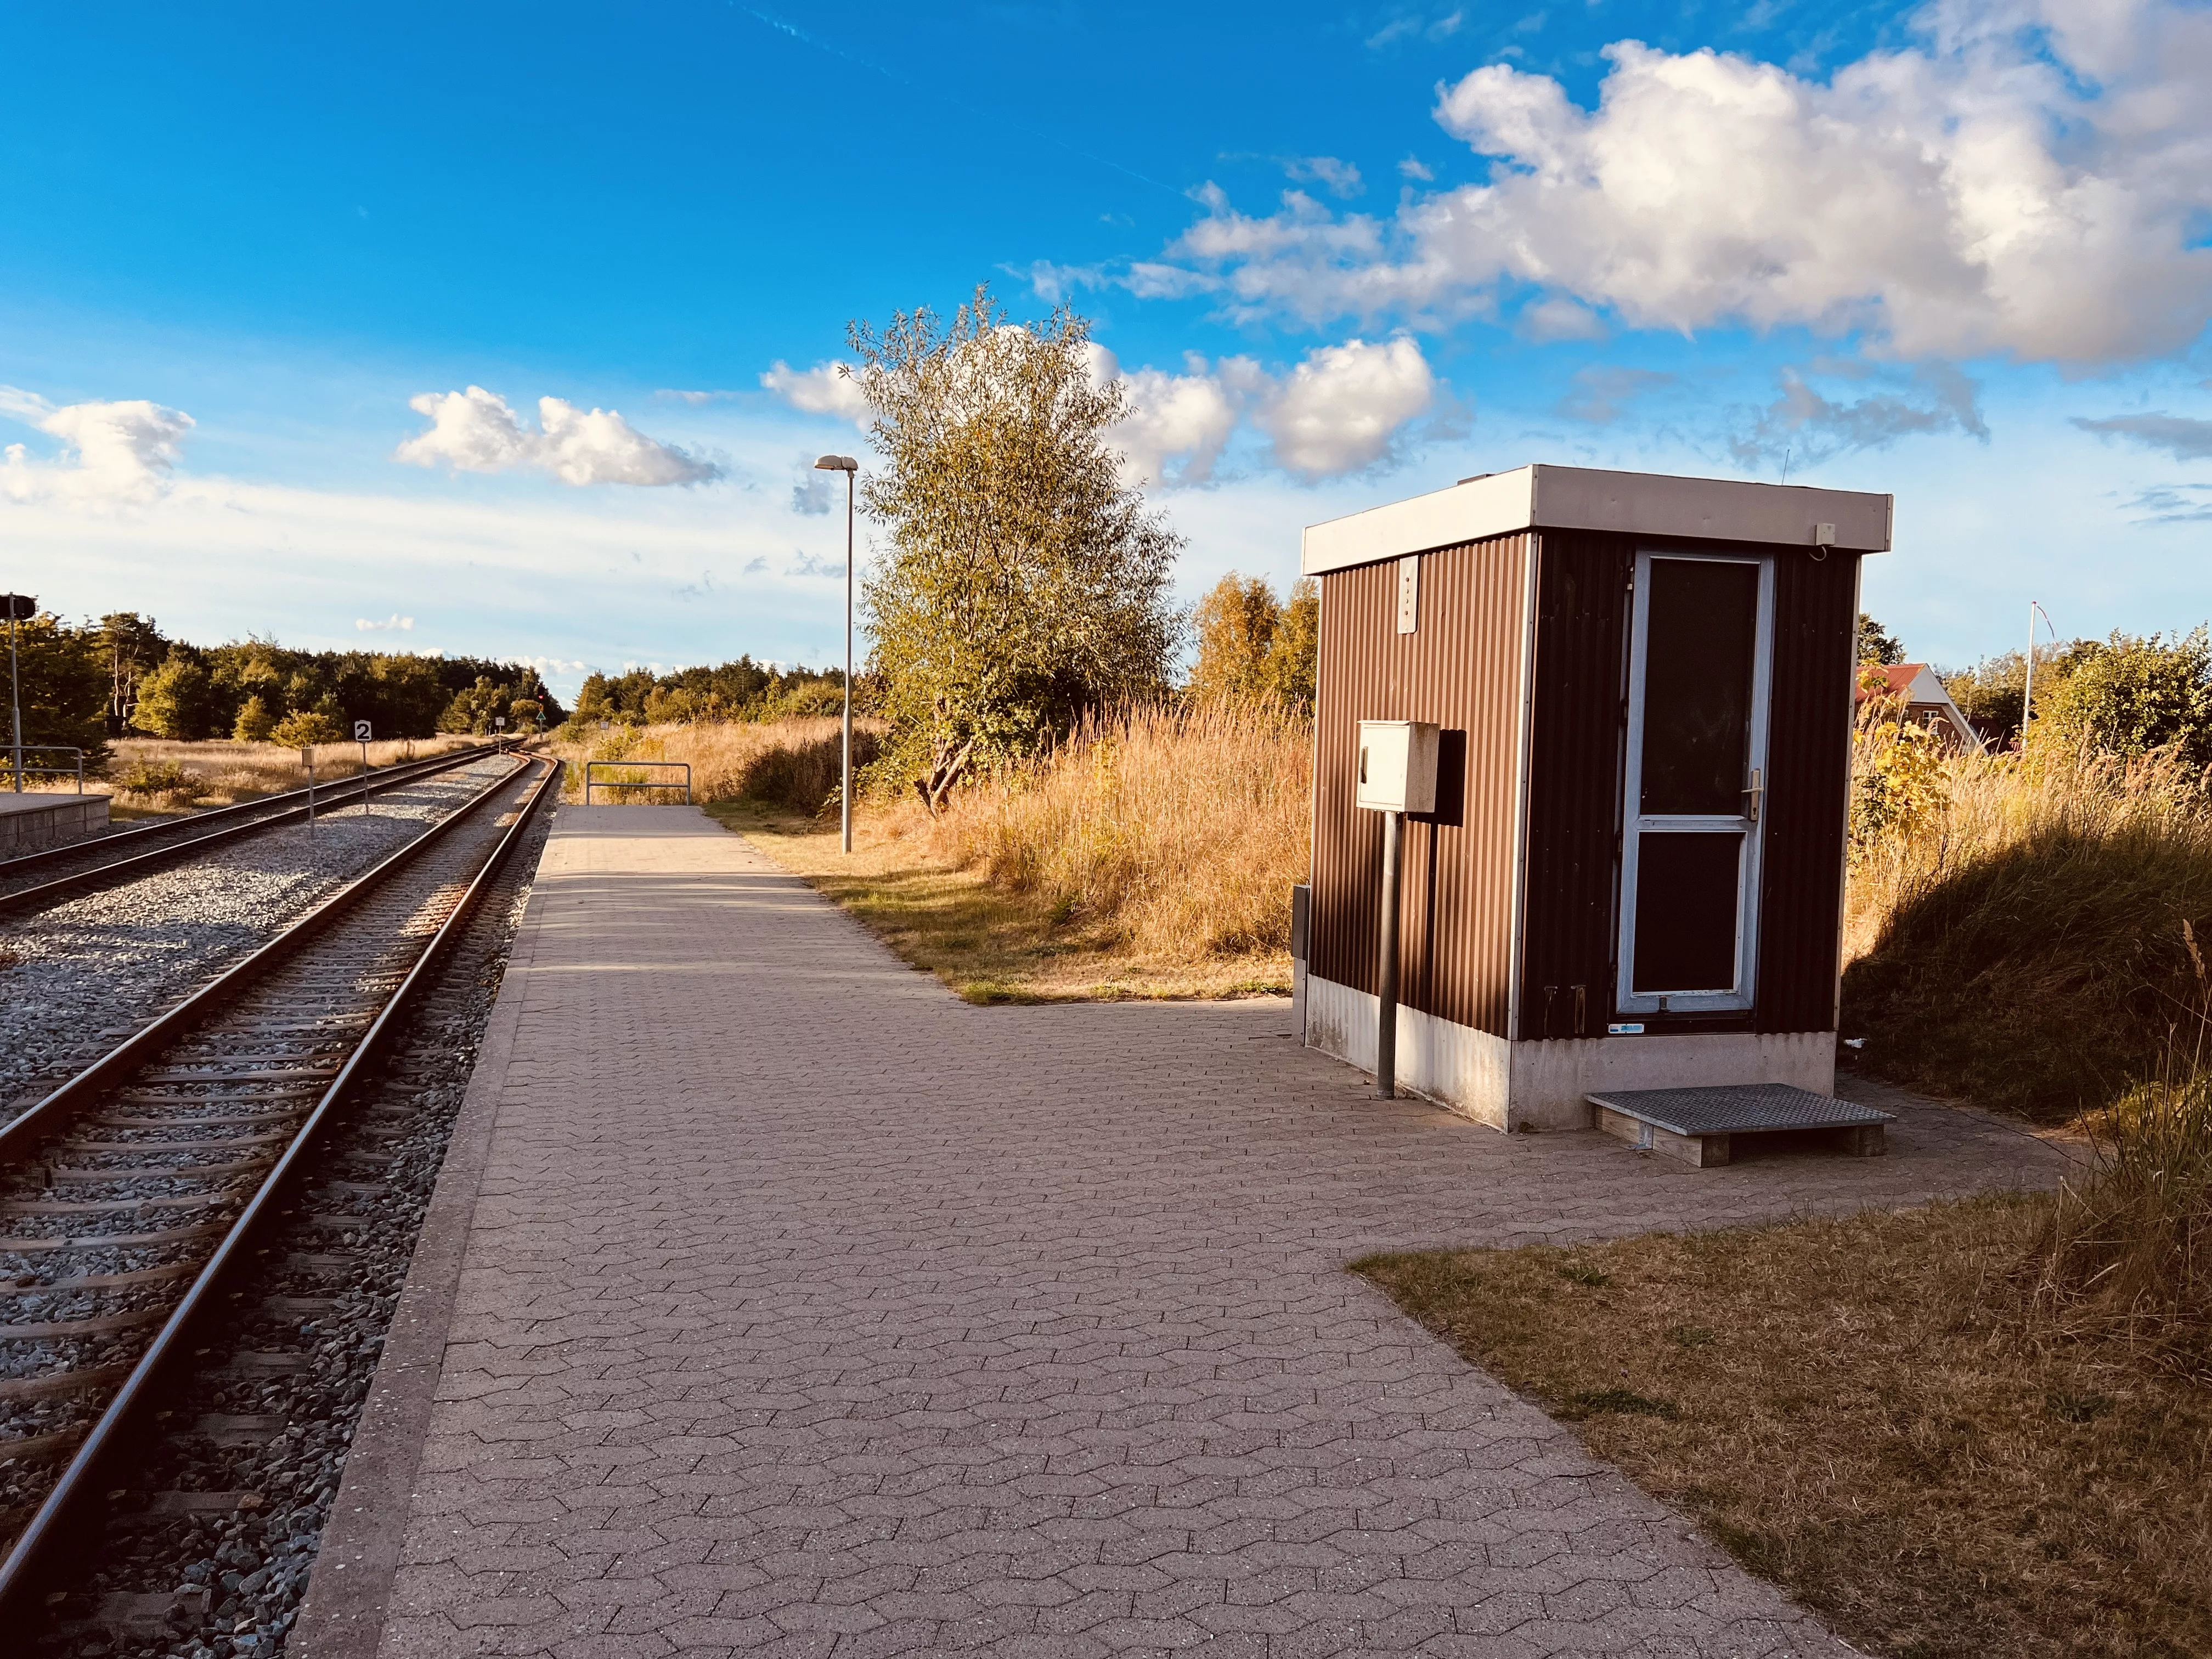 Billede af Ålbæk Station - Station er nedrevet, men Ålbæk Station har ligget her.